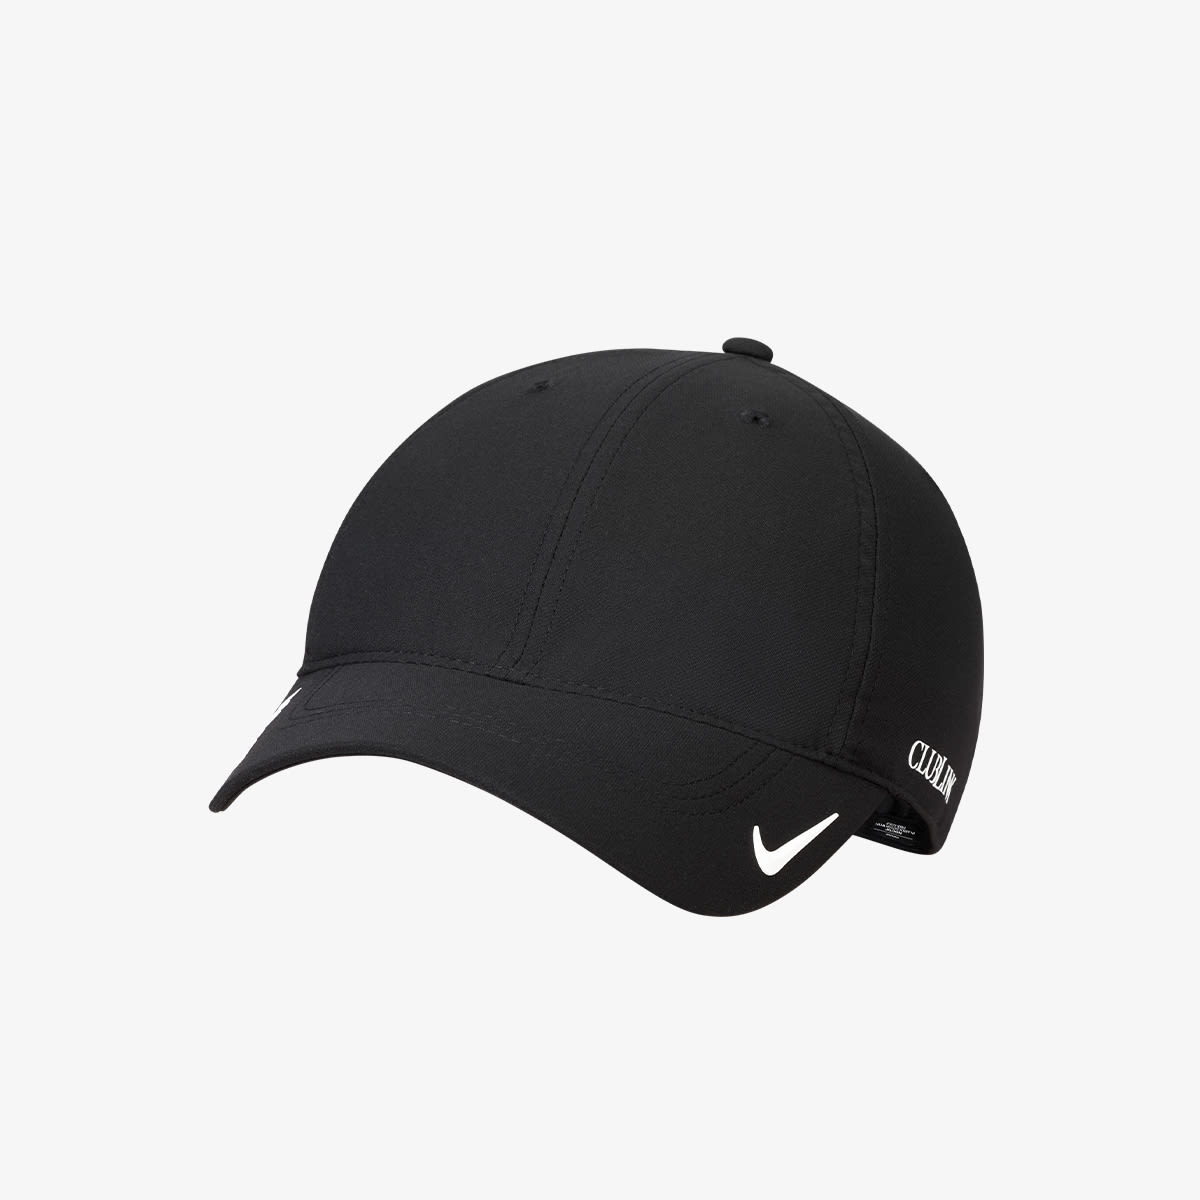 Nike x NOCTA H86 Cap (Black & White) | END. Launches